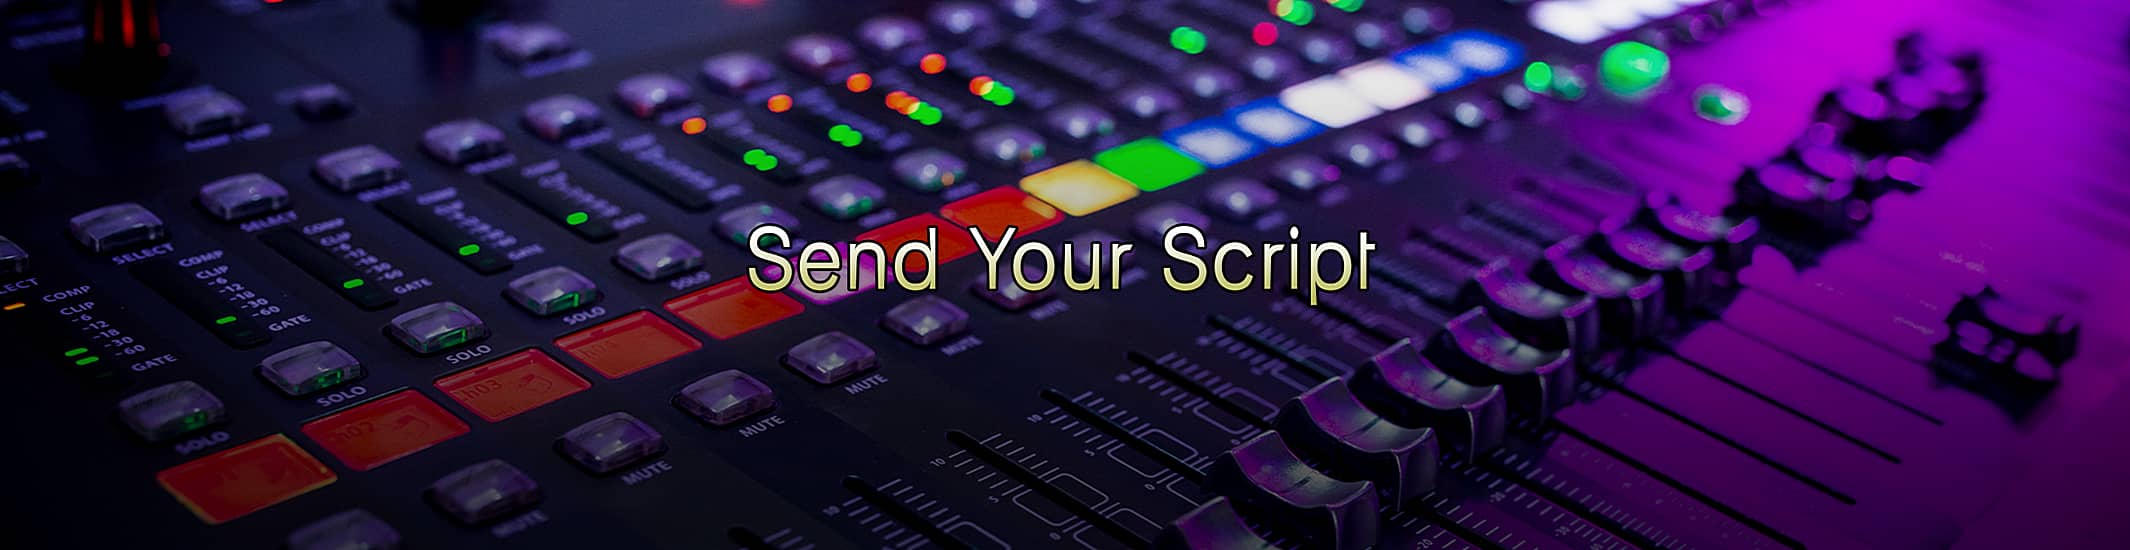 Send Your Script